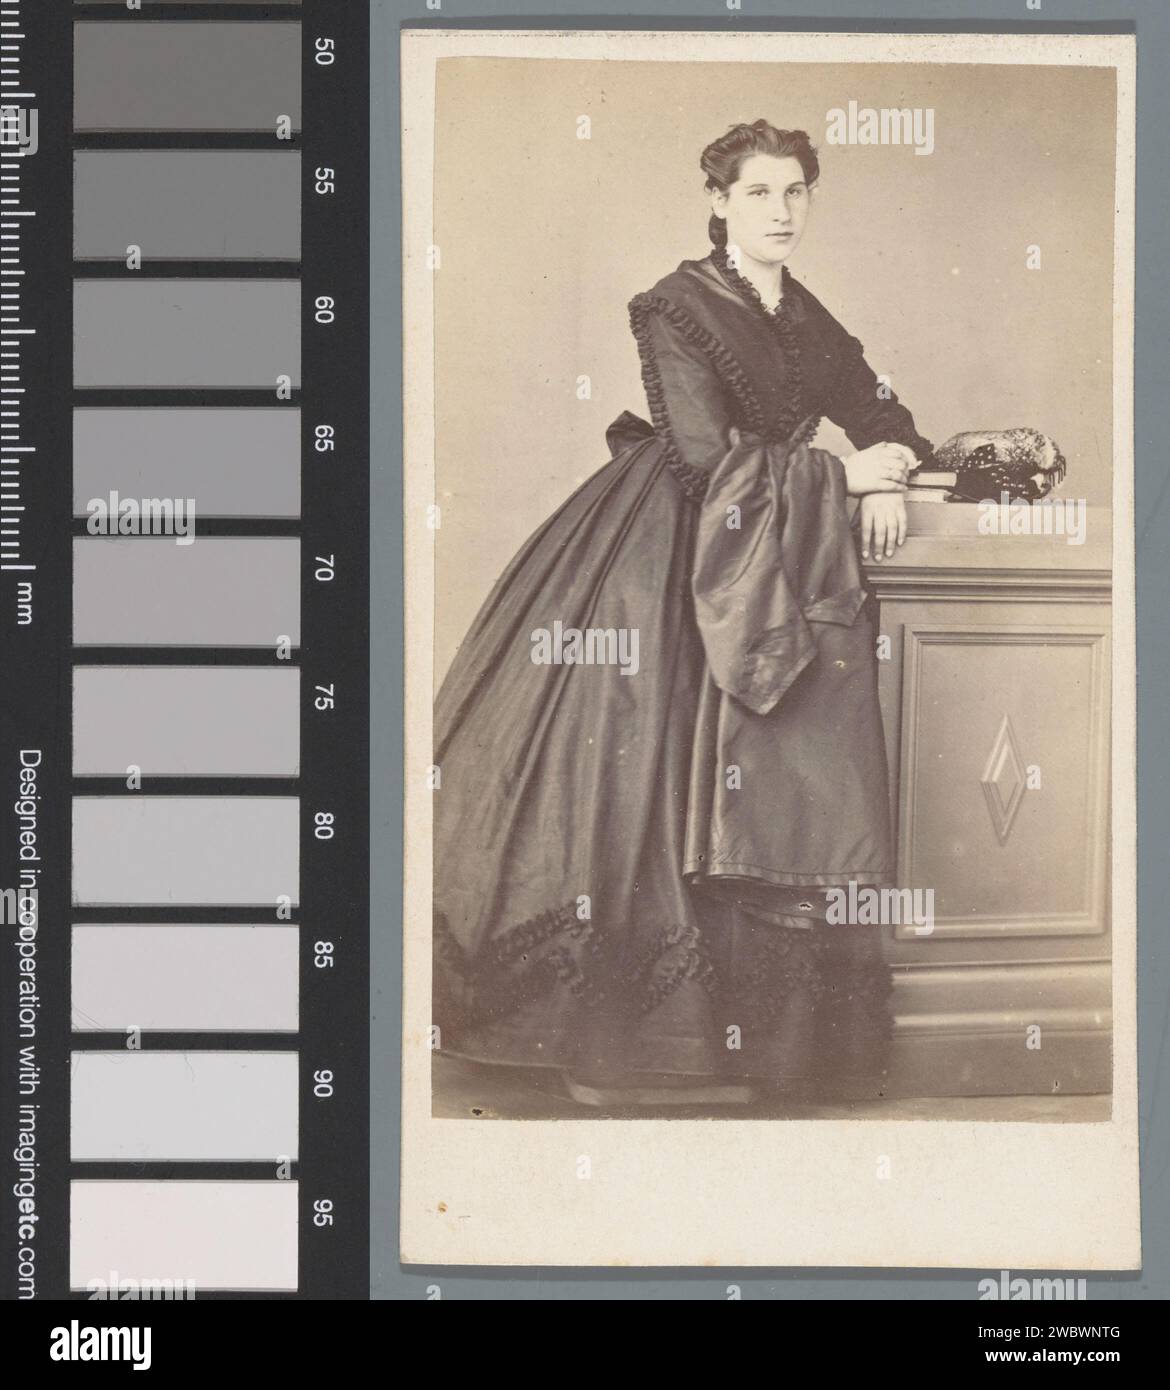 Portrait d'une femme inconnue, Fresse, 1855 - 1885 Photographie. Carte de visite Briare carton. papier albumen print femme adulte. Une personne historique anonyme a représenté Briare Banque D'Images